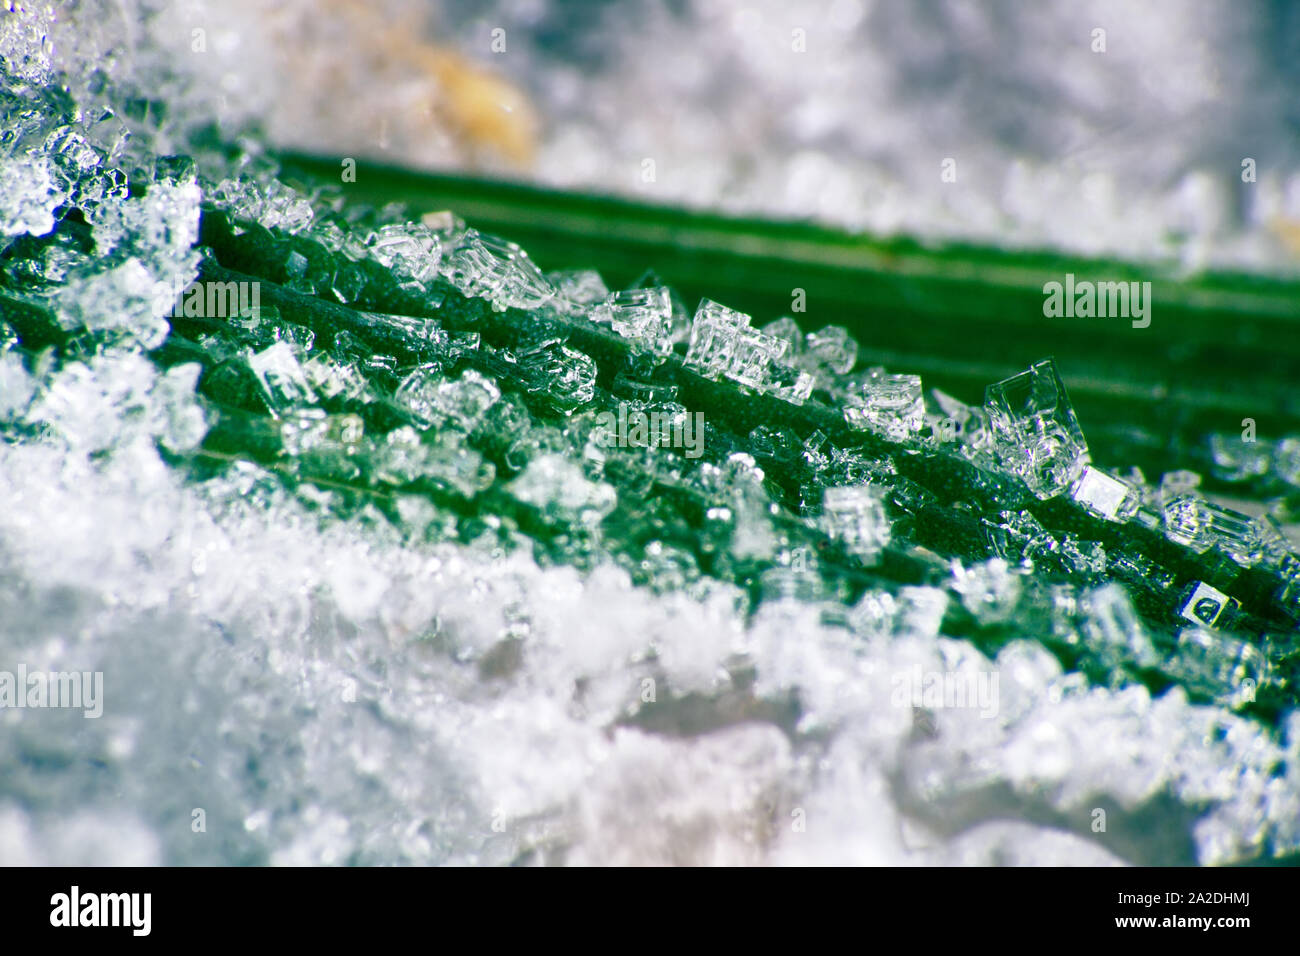 Ice-Werk. Eis spicule erschien auf grüne Blätter wegen eines unerwarteten Frost. Foto Raureif mit Anwendung der ultra Vergrößerung, Schönheit des Eises cr Stockfoto